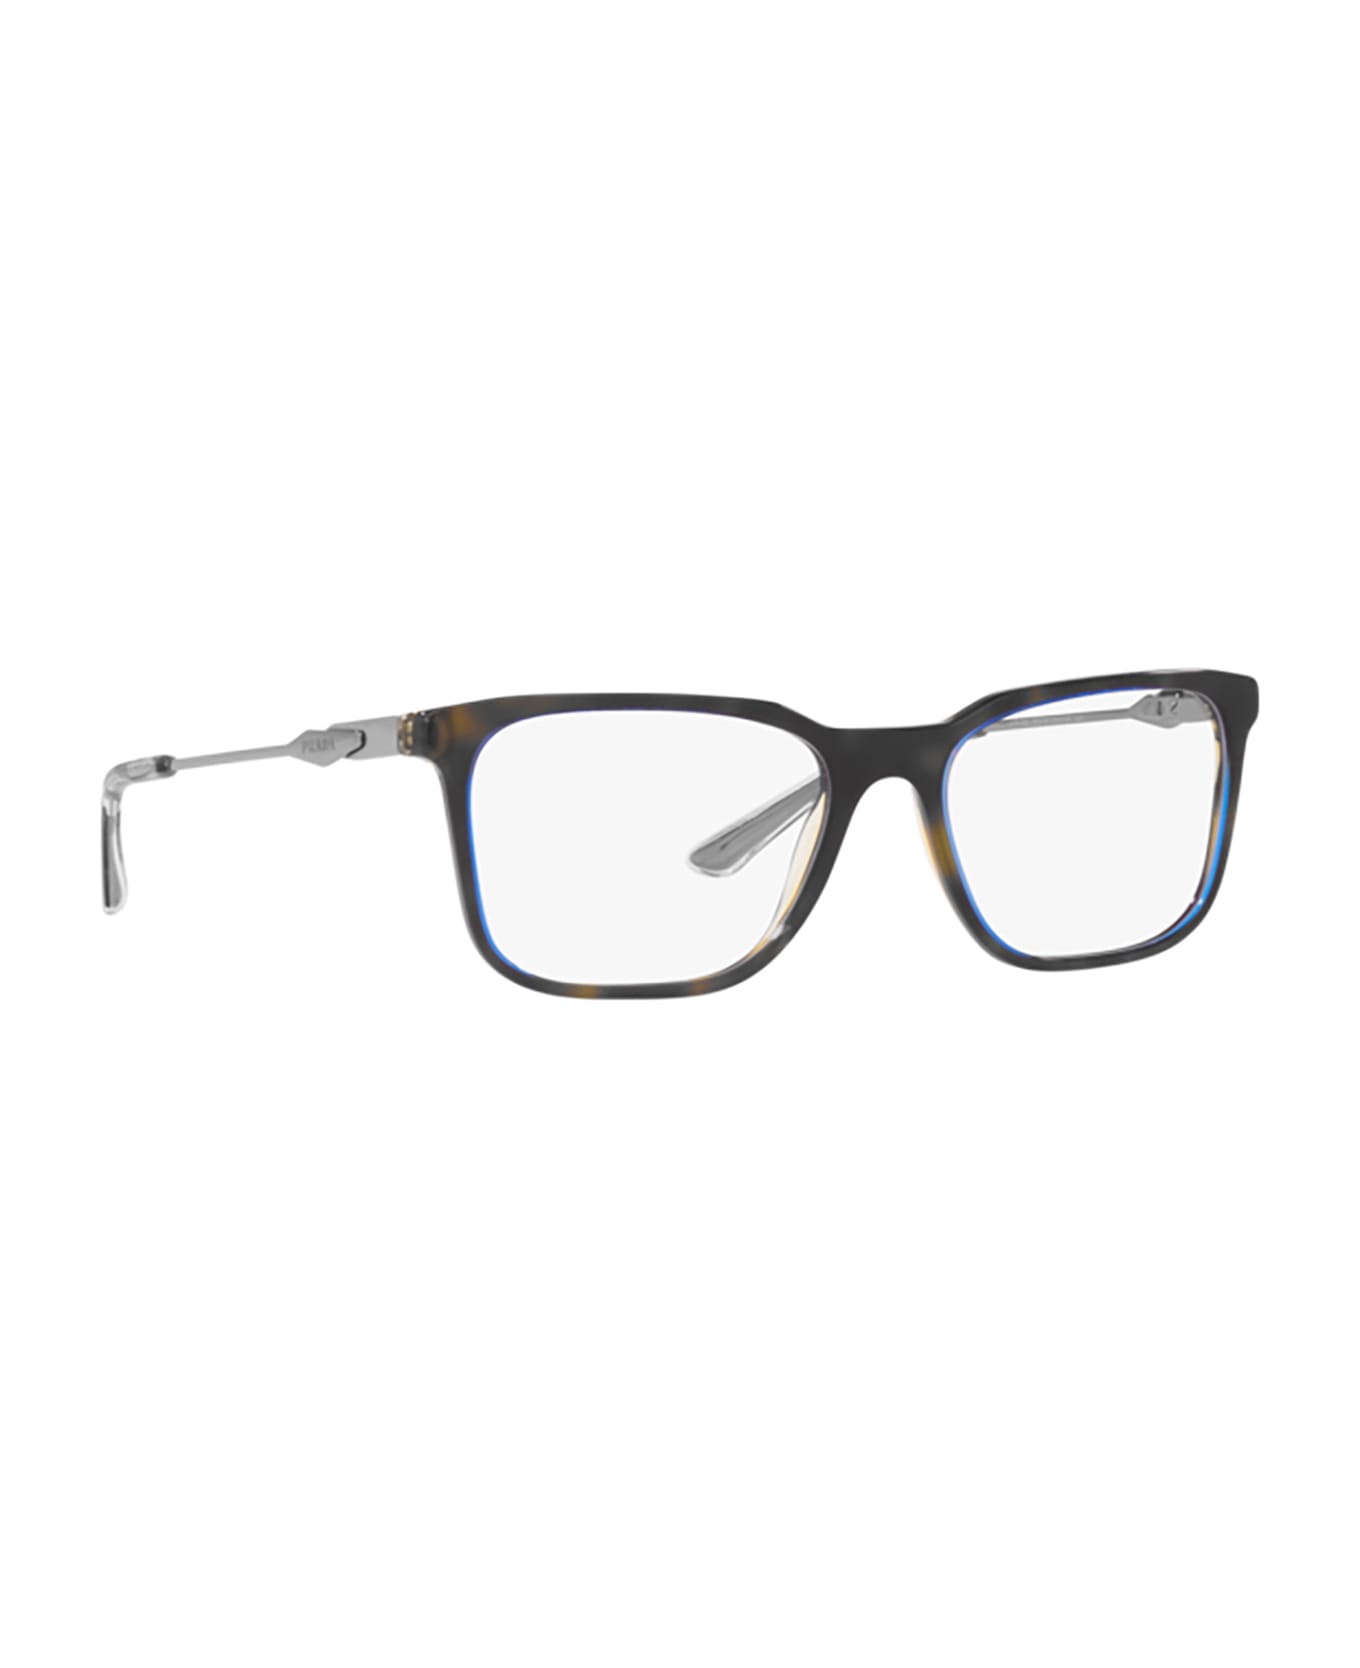 Prada Eyewear Pr 05zv Denim Tortoise Glasses - Denim Tortoise